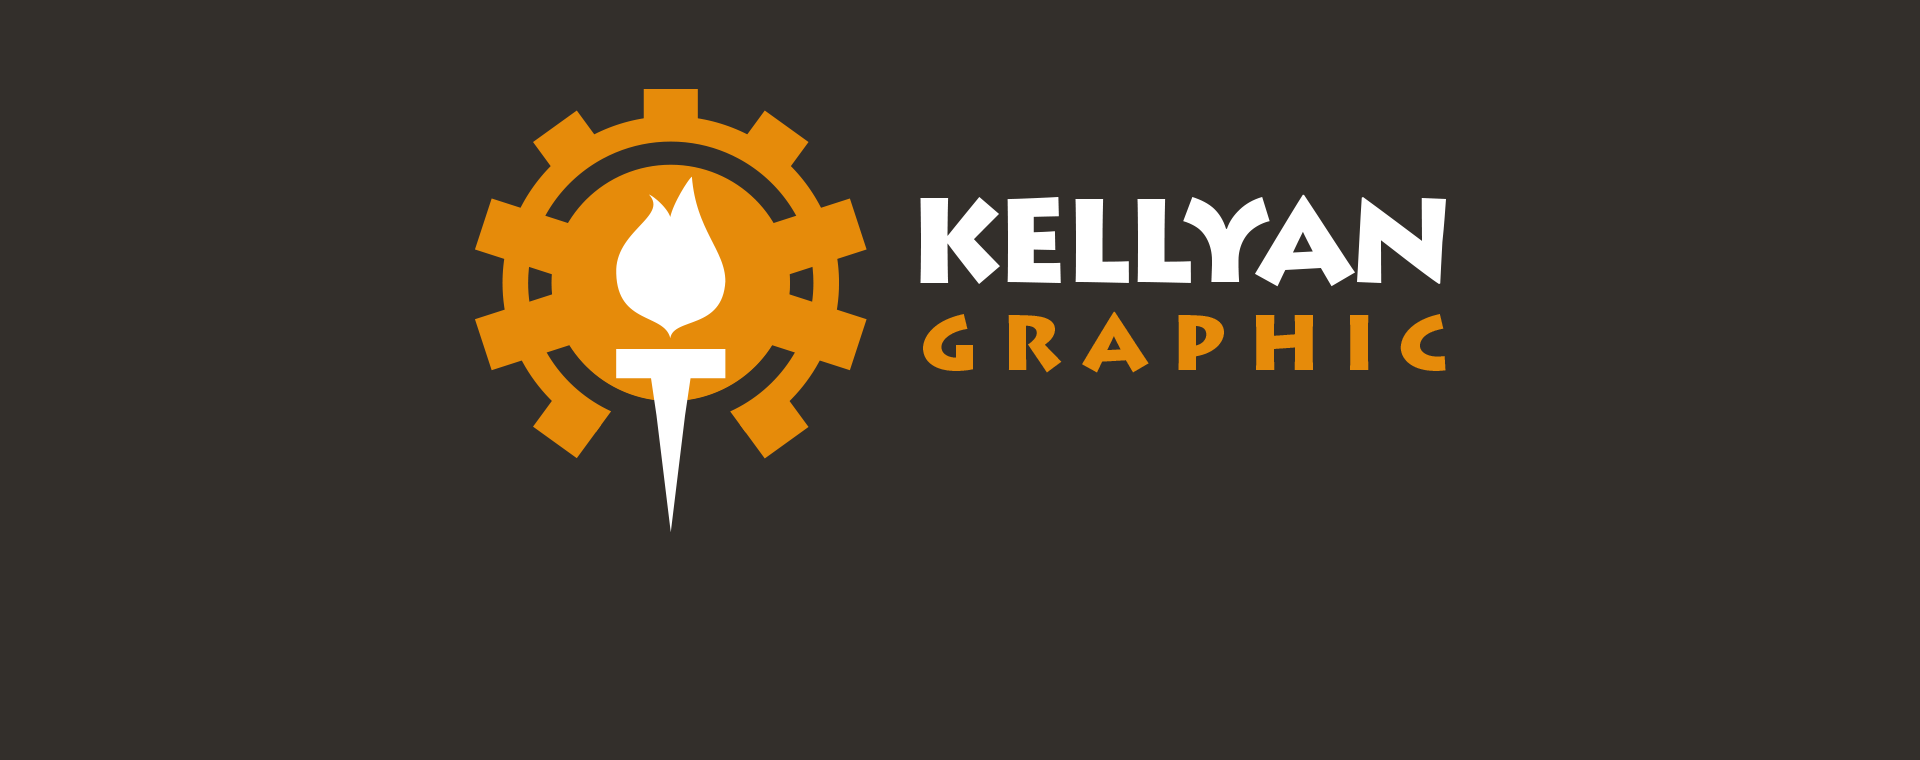 Bandeau Kellyan Graphic Logo